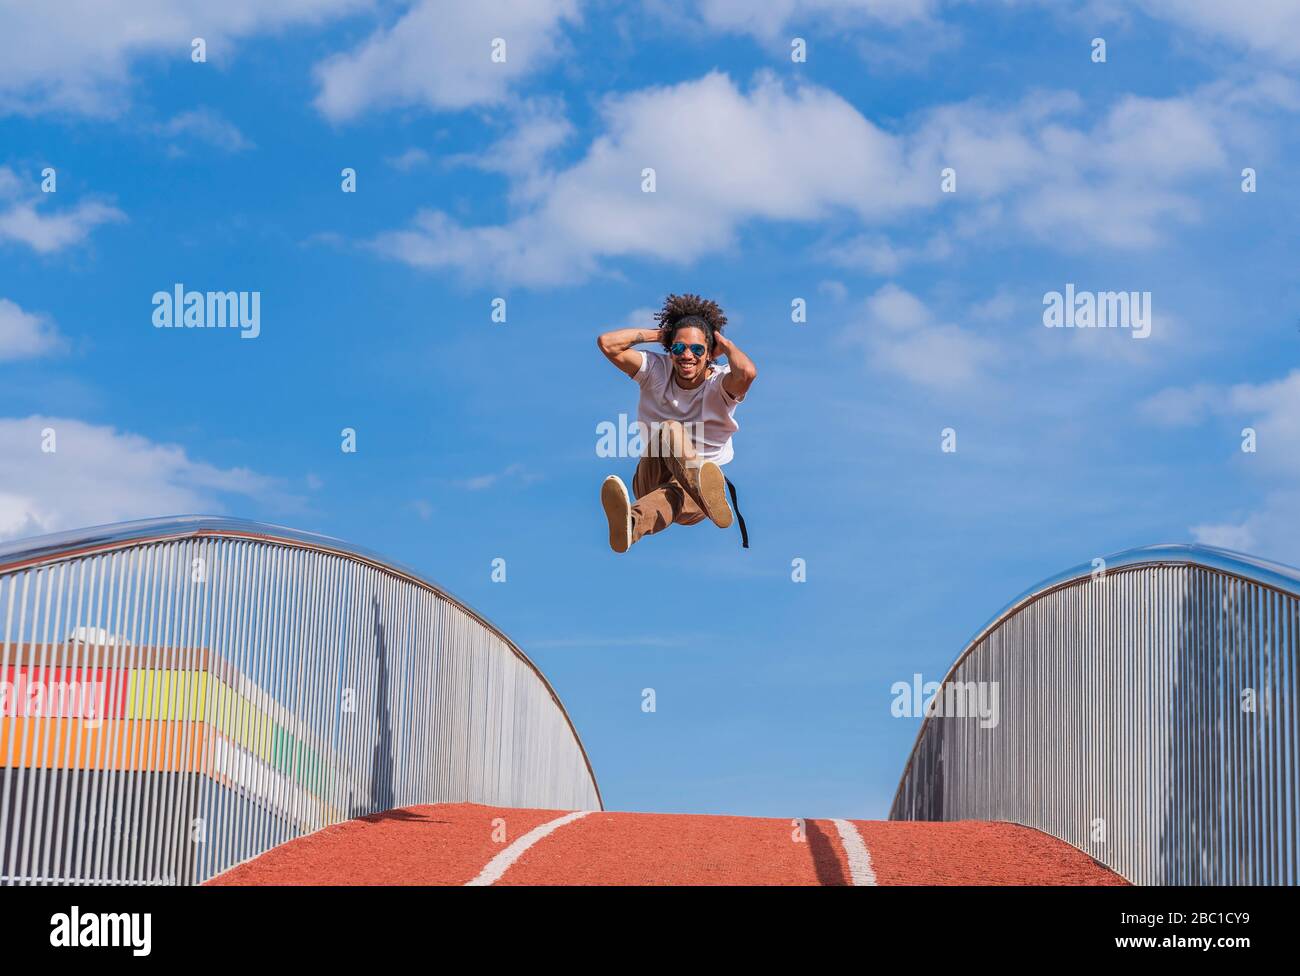 Tänzerin springt auf Brücke, mitten in der Luft Stockfoto